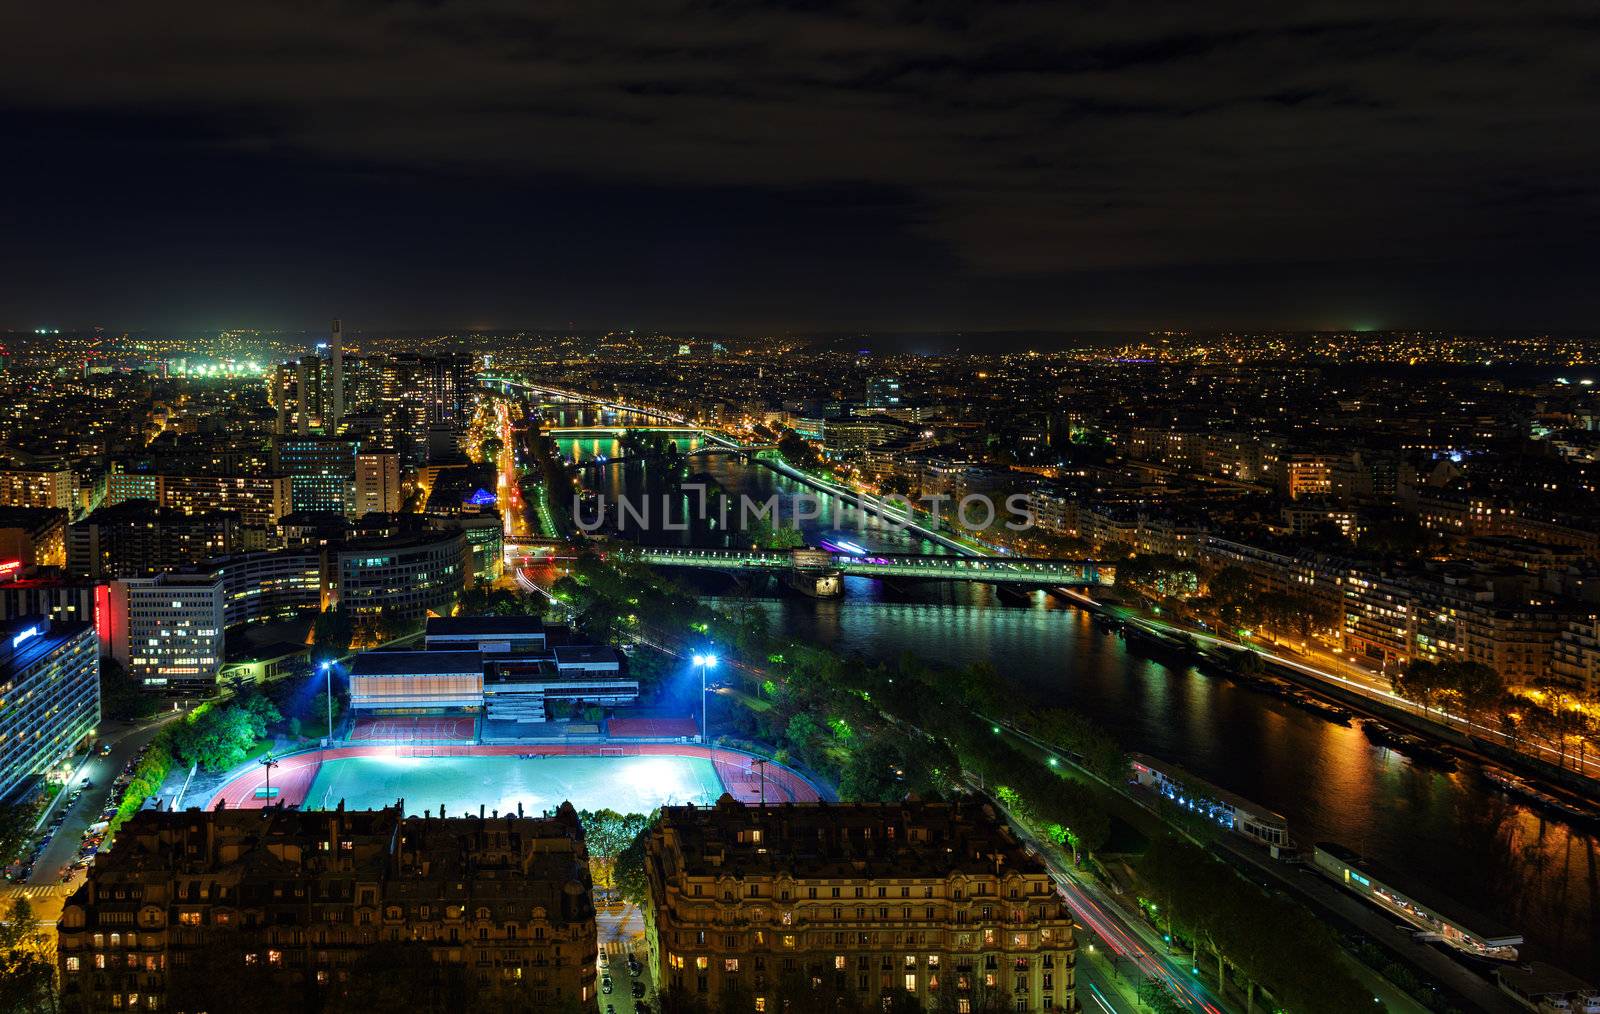 Paris City Night View by Roka